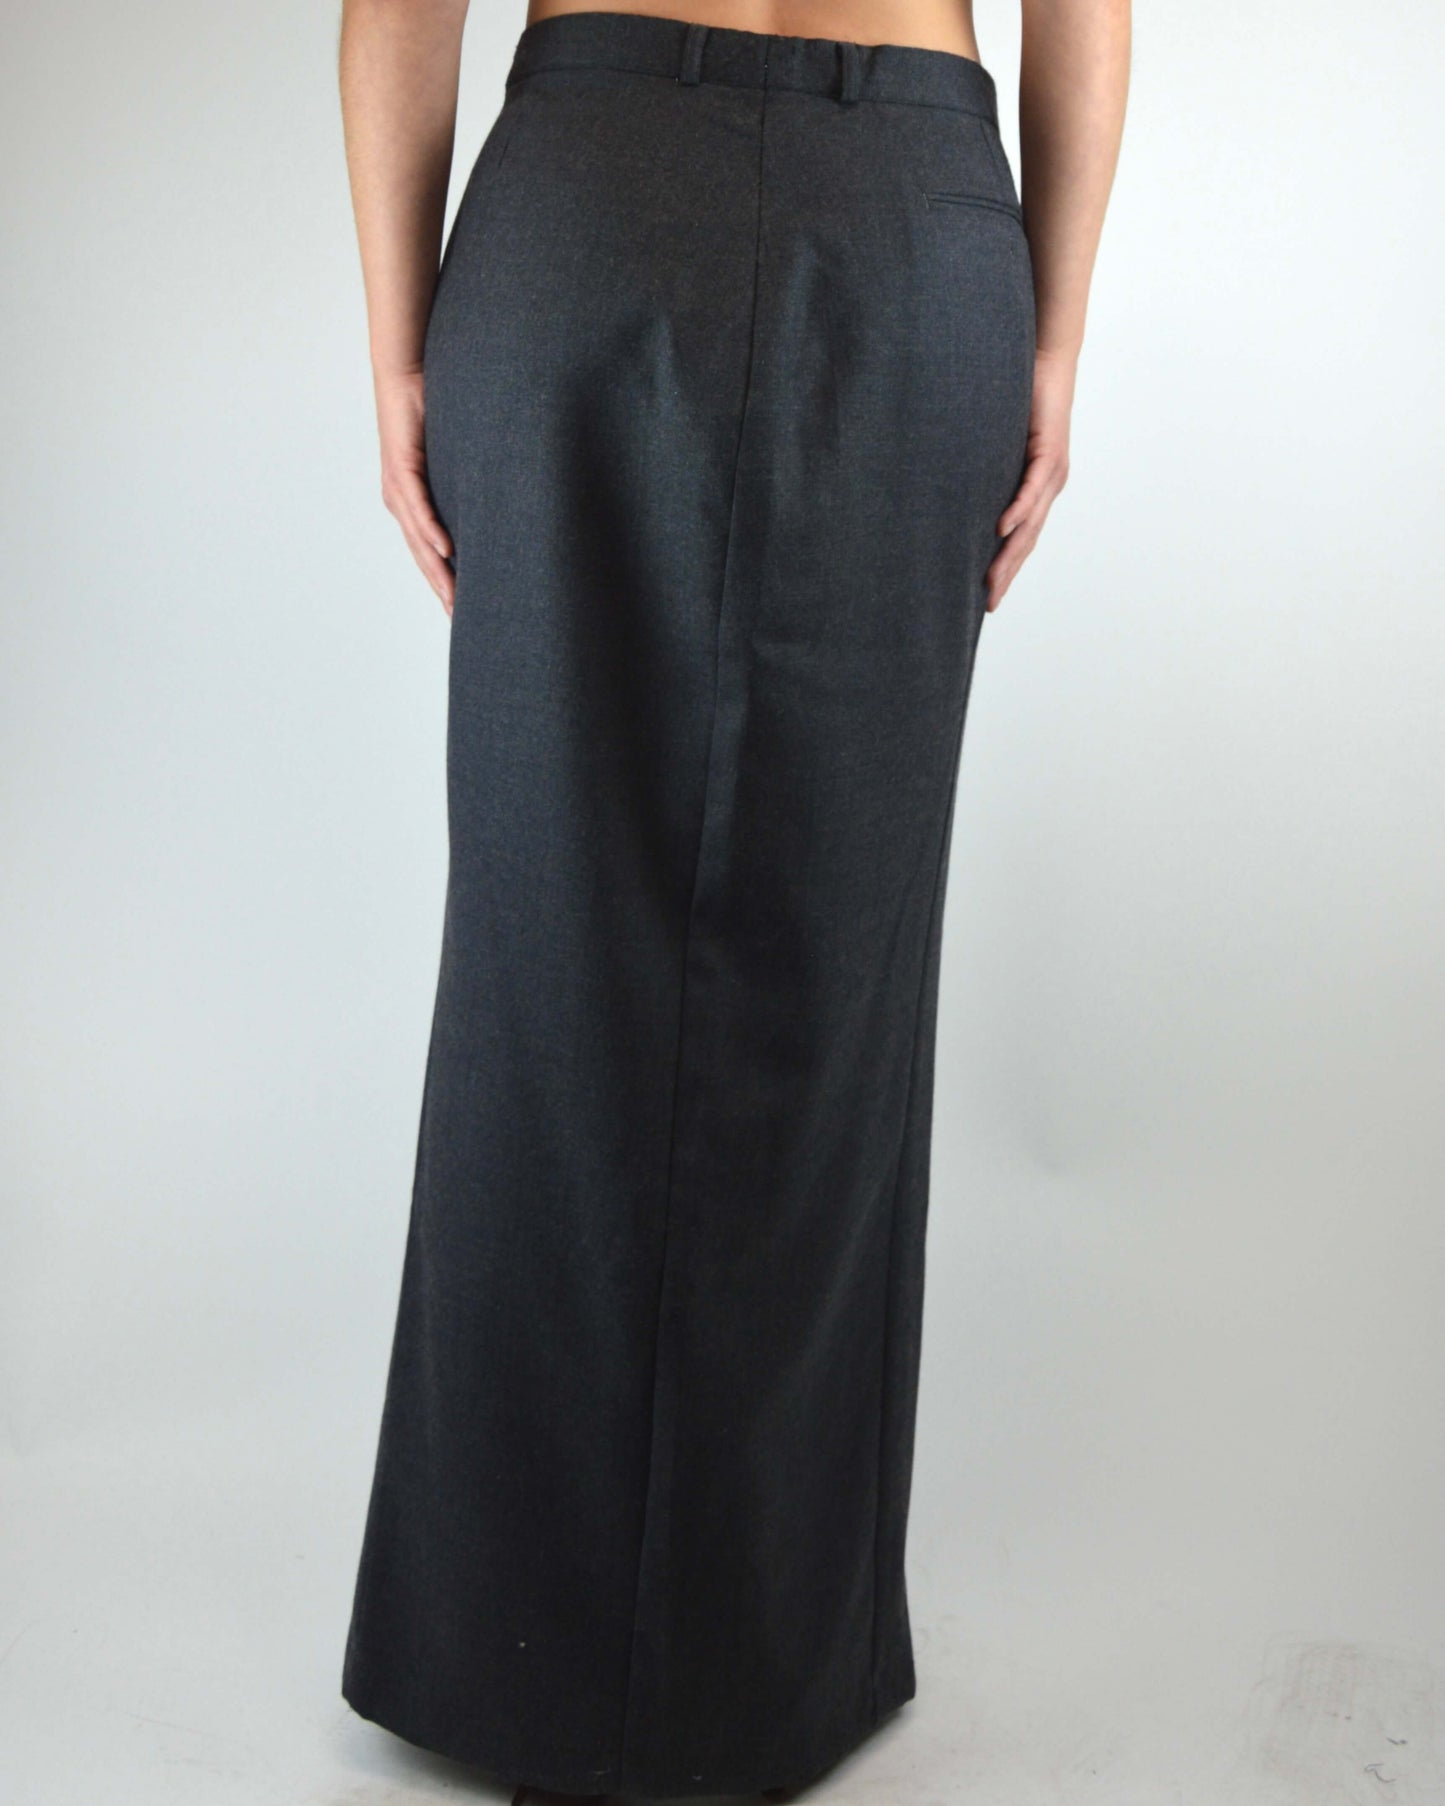 Long Skirt - Grey Softer Texture (M/L)